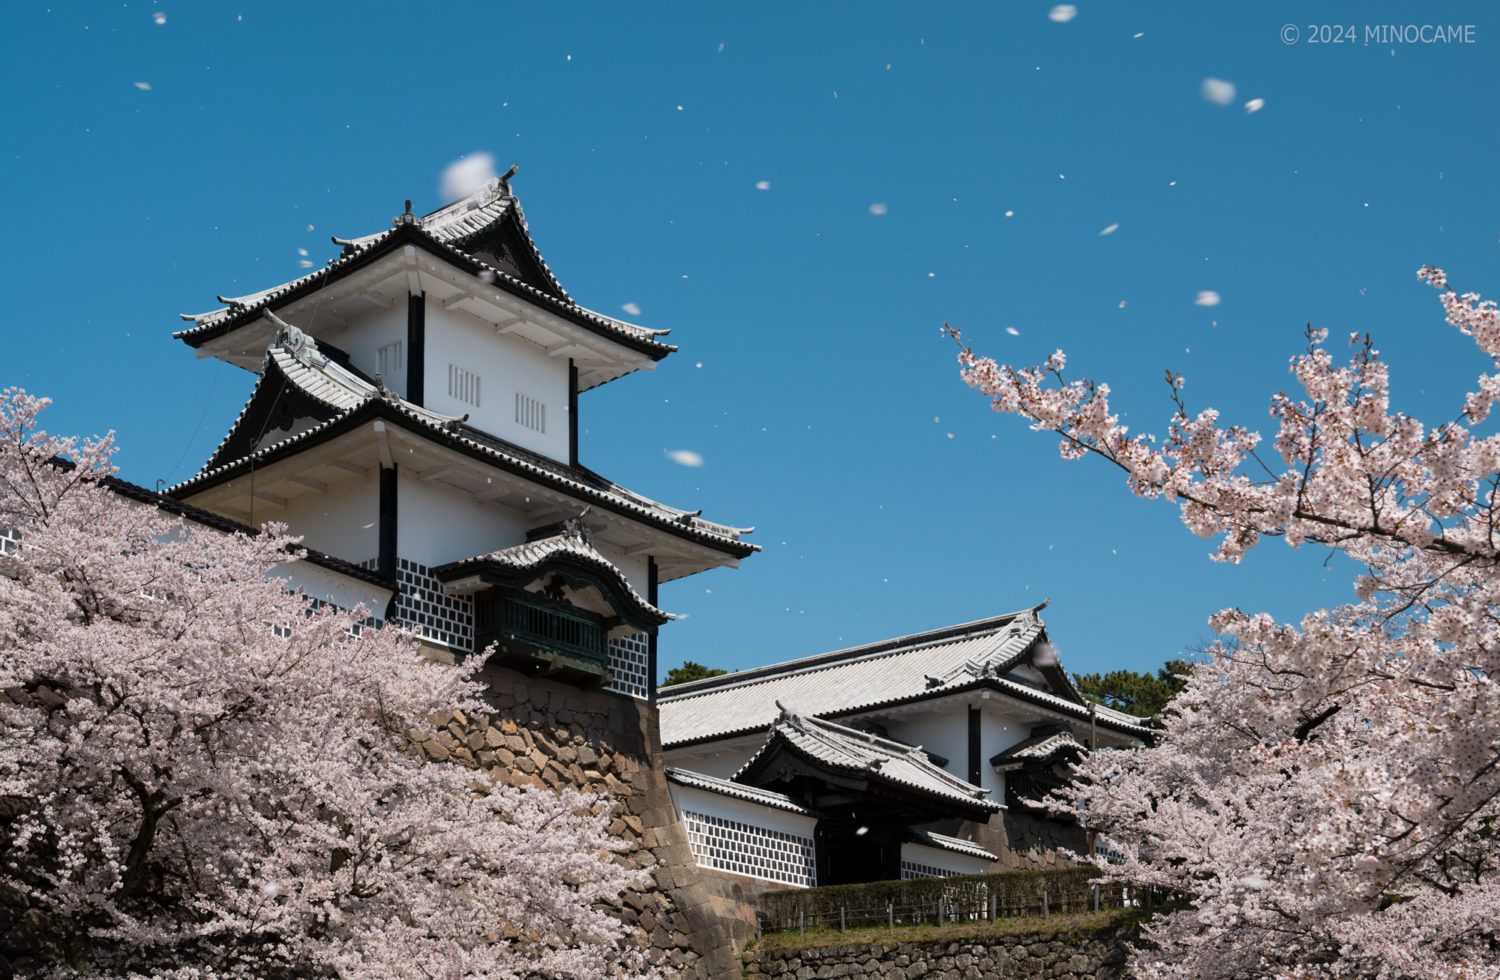 Ishikawa gate of Kanazawa castle with cherry blossom